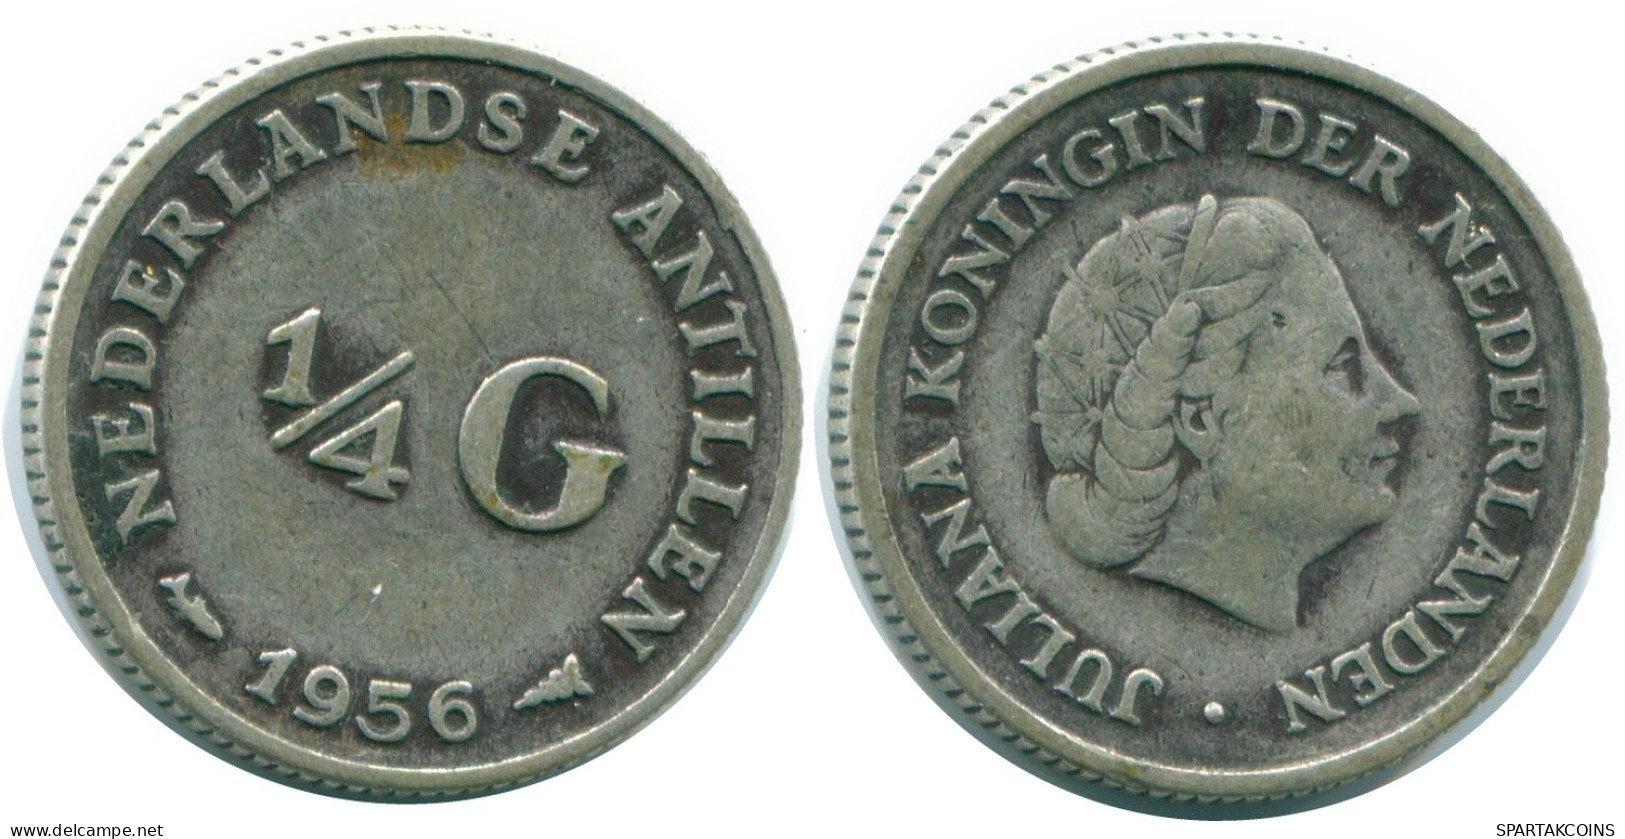 1/4 GULDEN 1956 NIEDERLÄNDISCHE ANTILLEN SILBER Koloniale Münze #NL10956.4.D.A - Niederländische Antillen